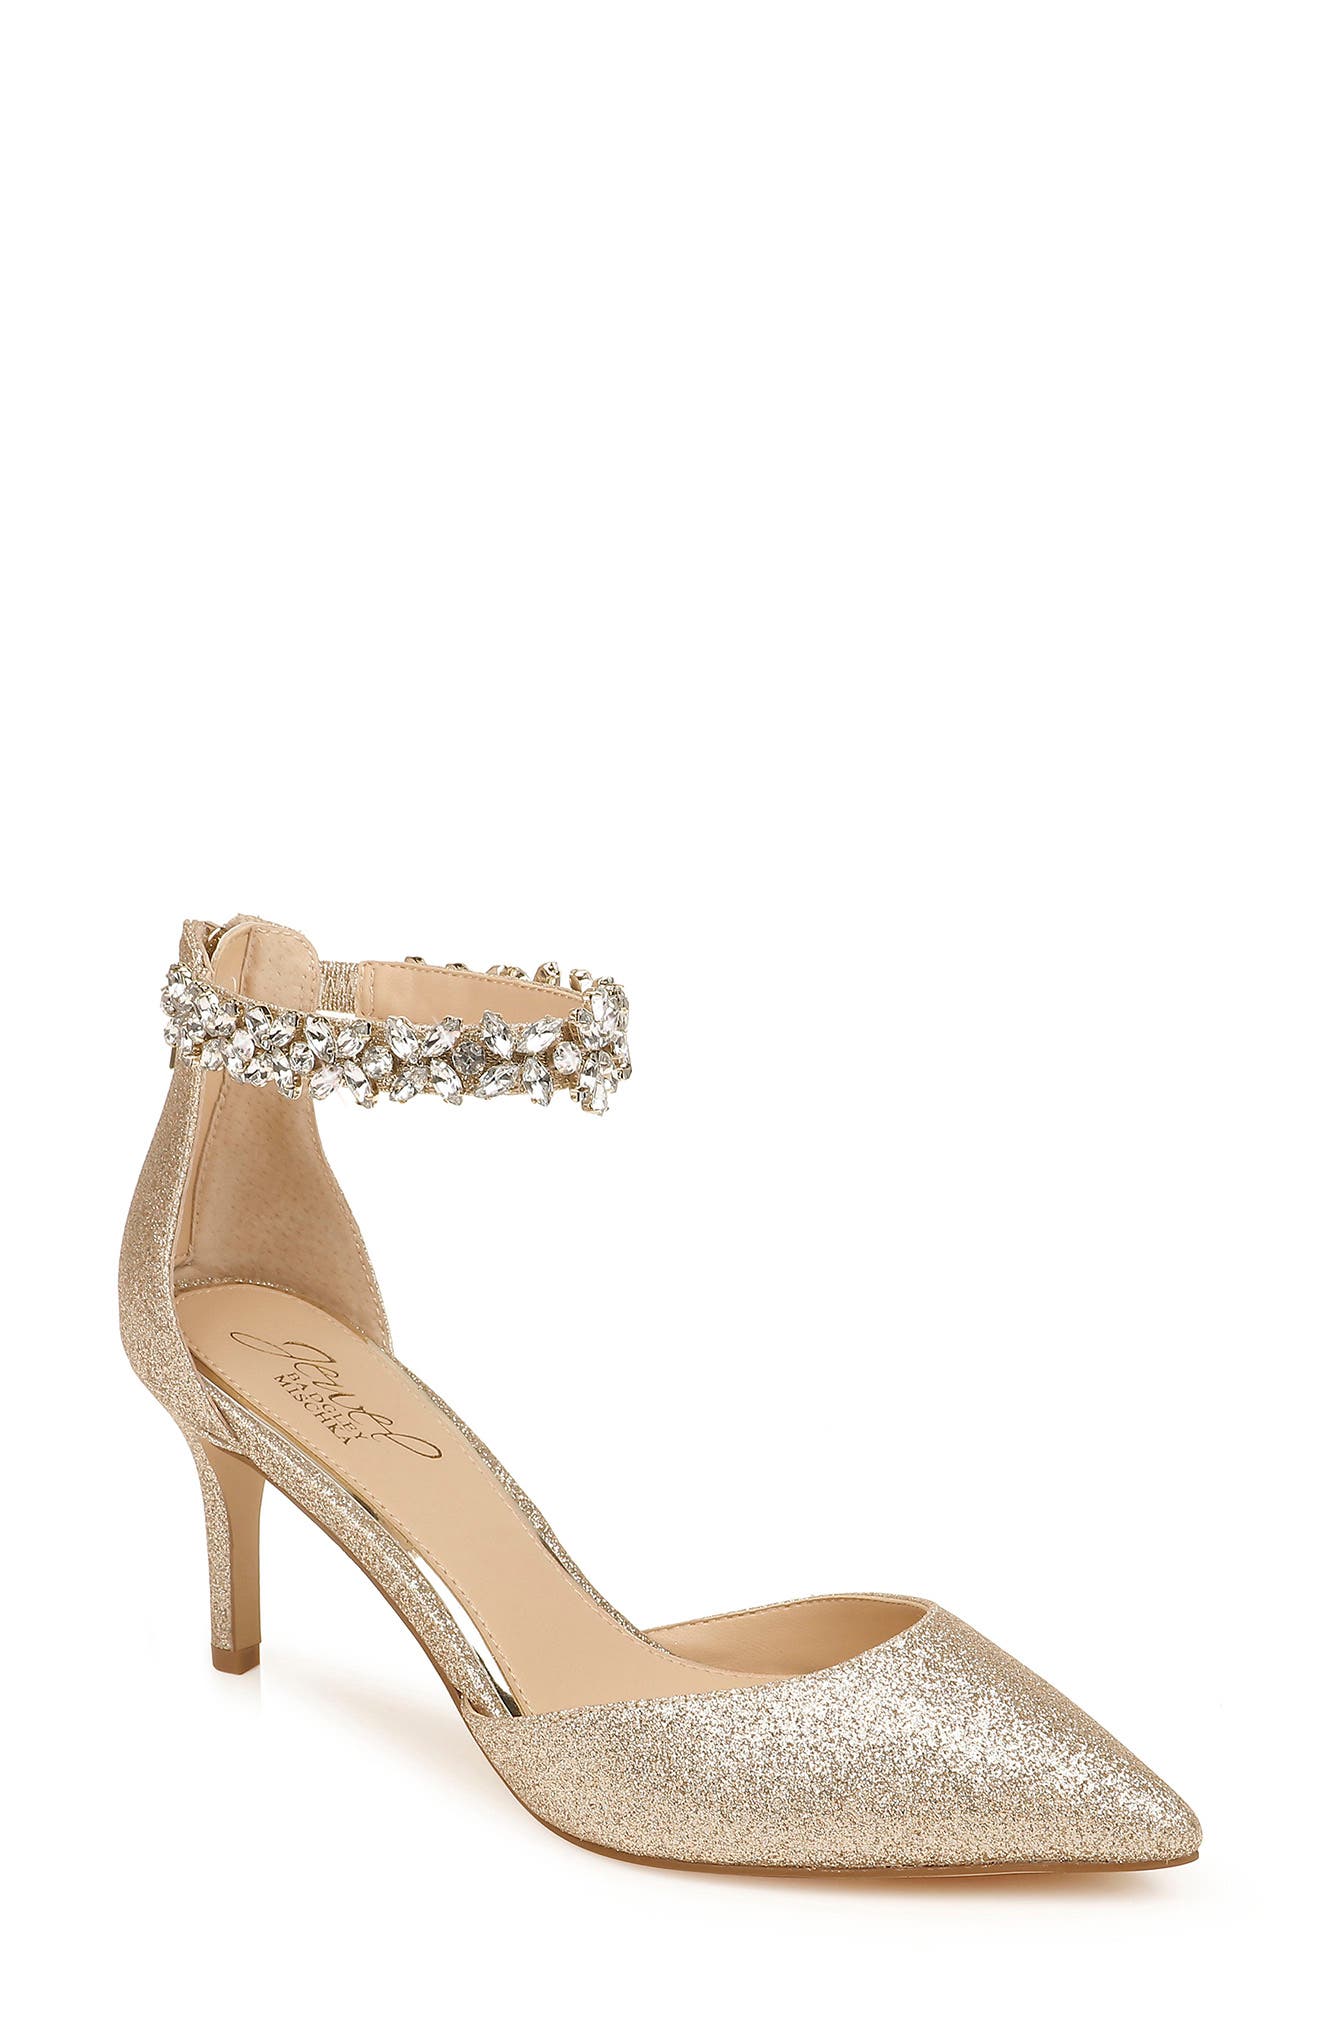 inc 5 golden heels